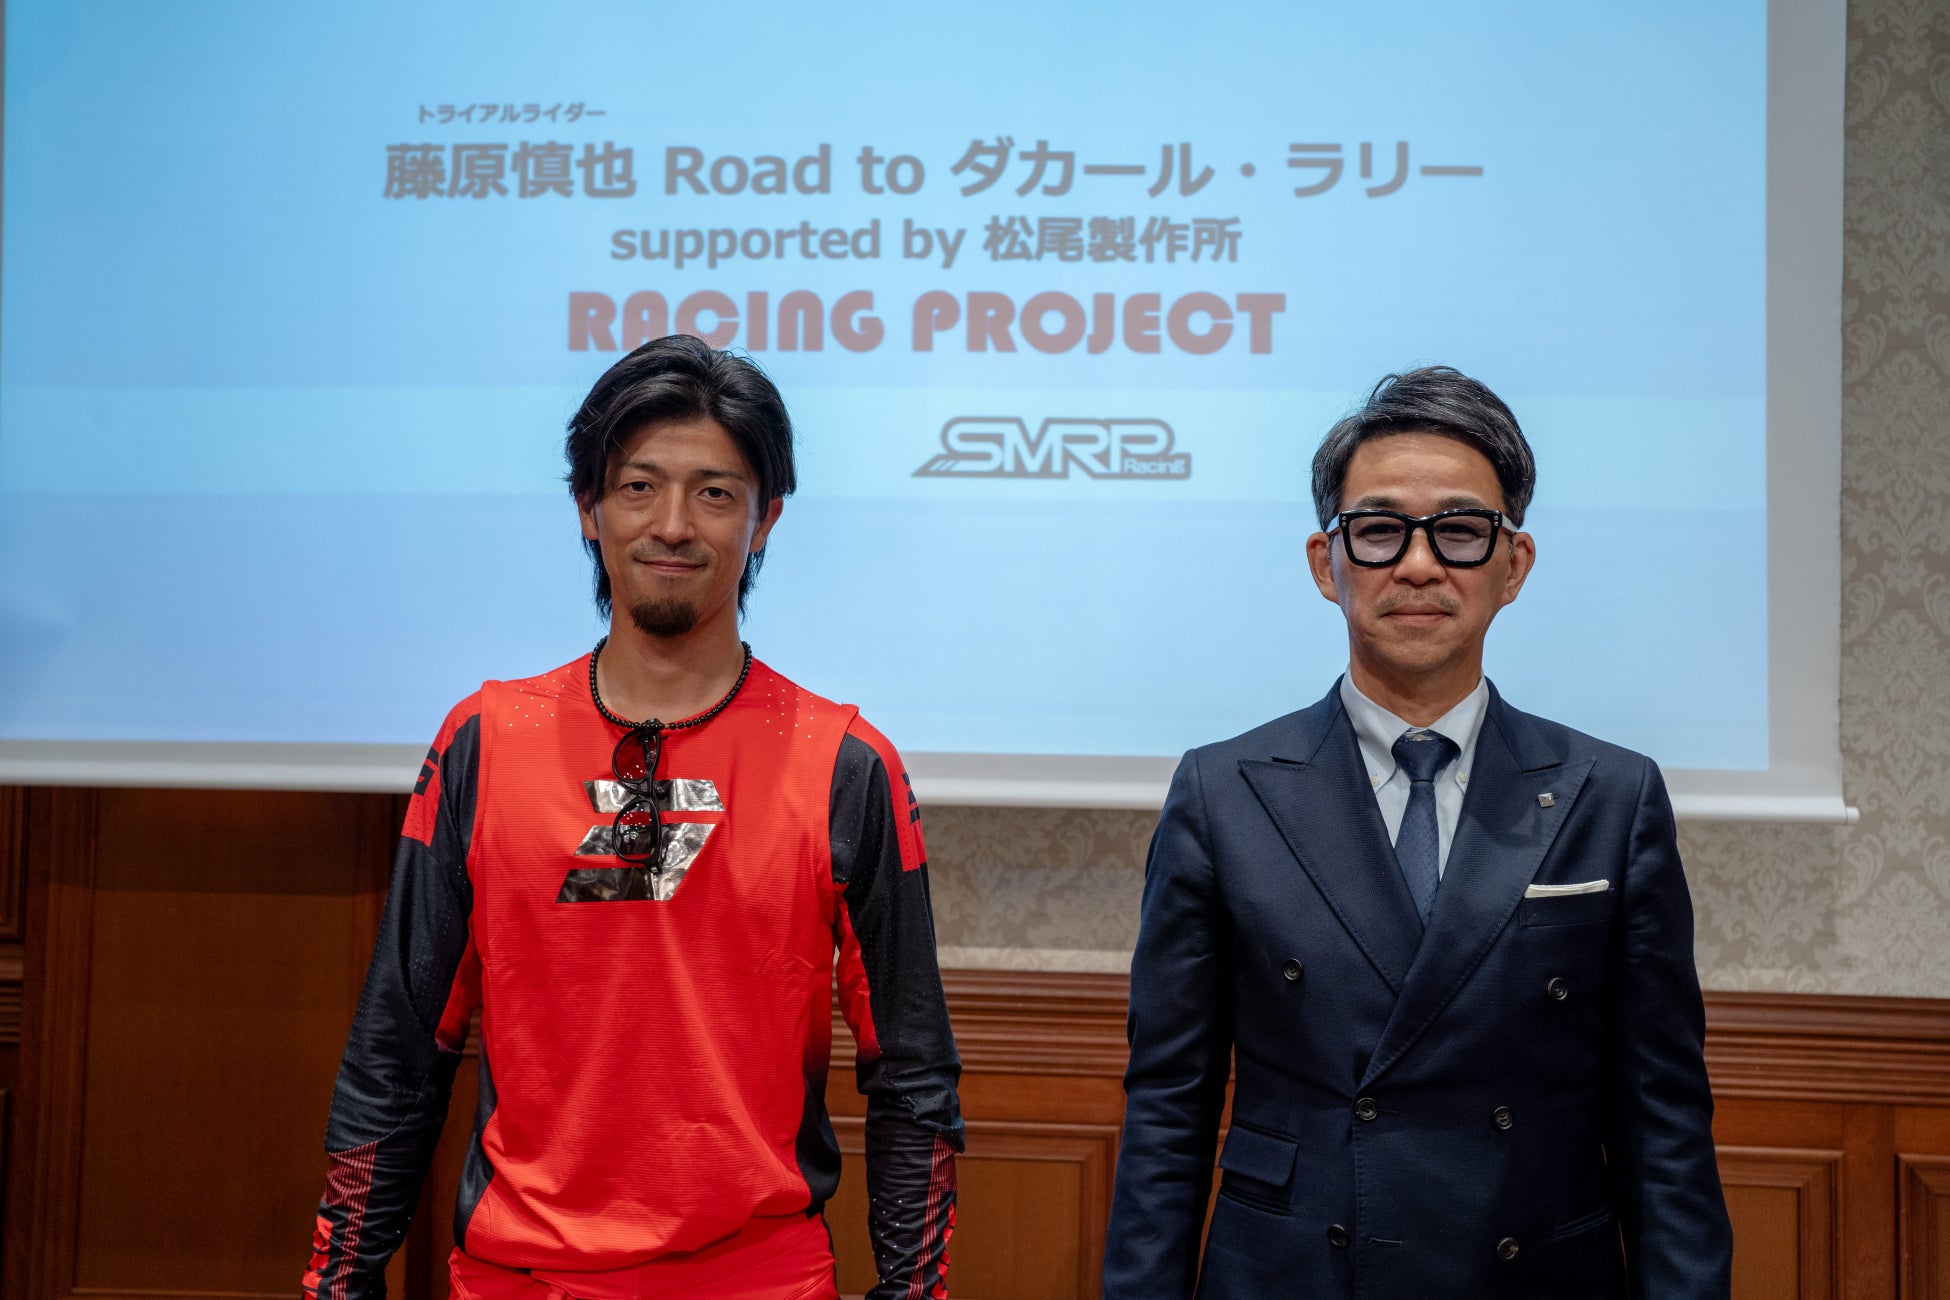 世界一過酷なレース「ダカール・ラリー」に挑戦！日本トップライダー藤原慎也が松尾製作所の強力サポートをうけ「プロジェクト」を始動！